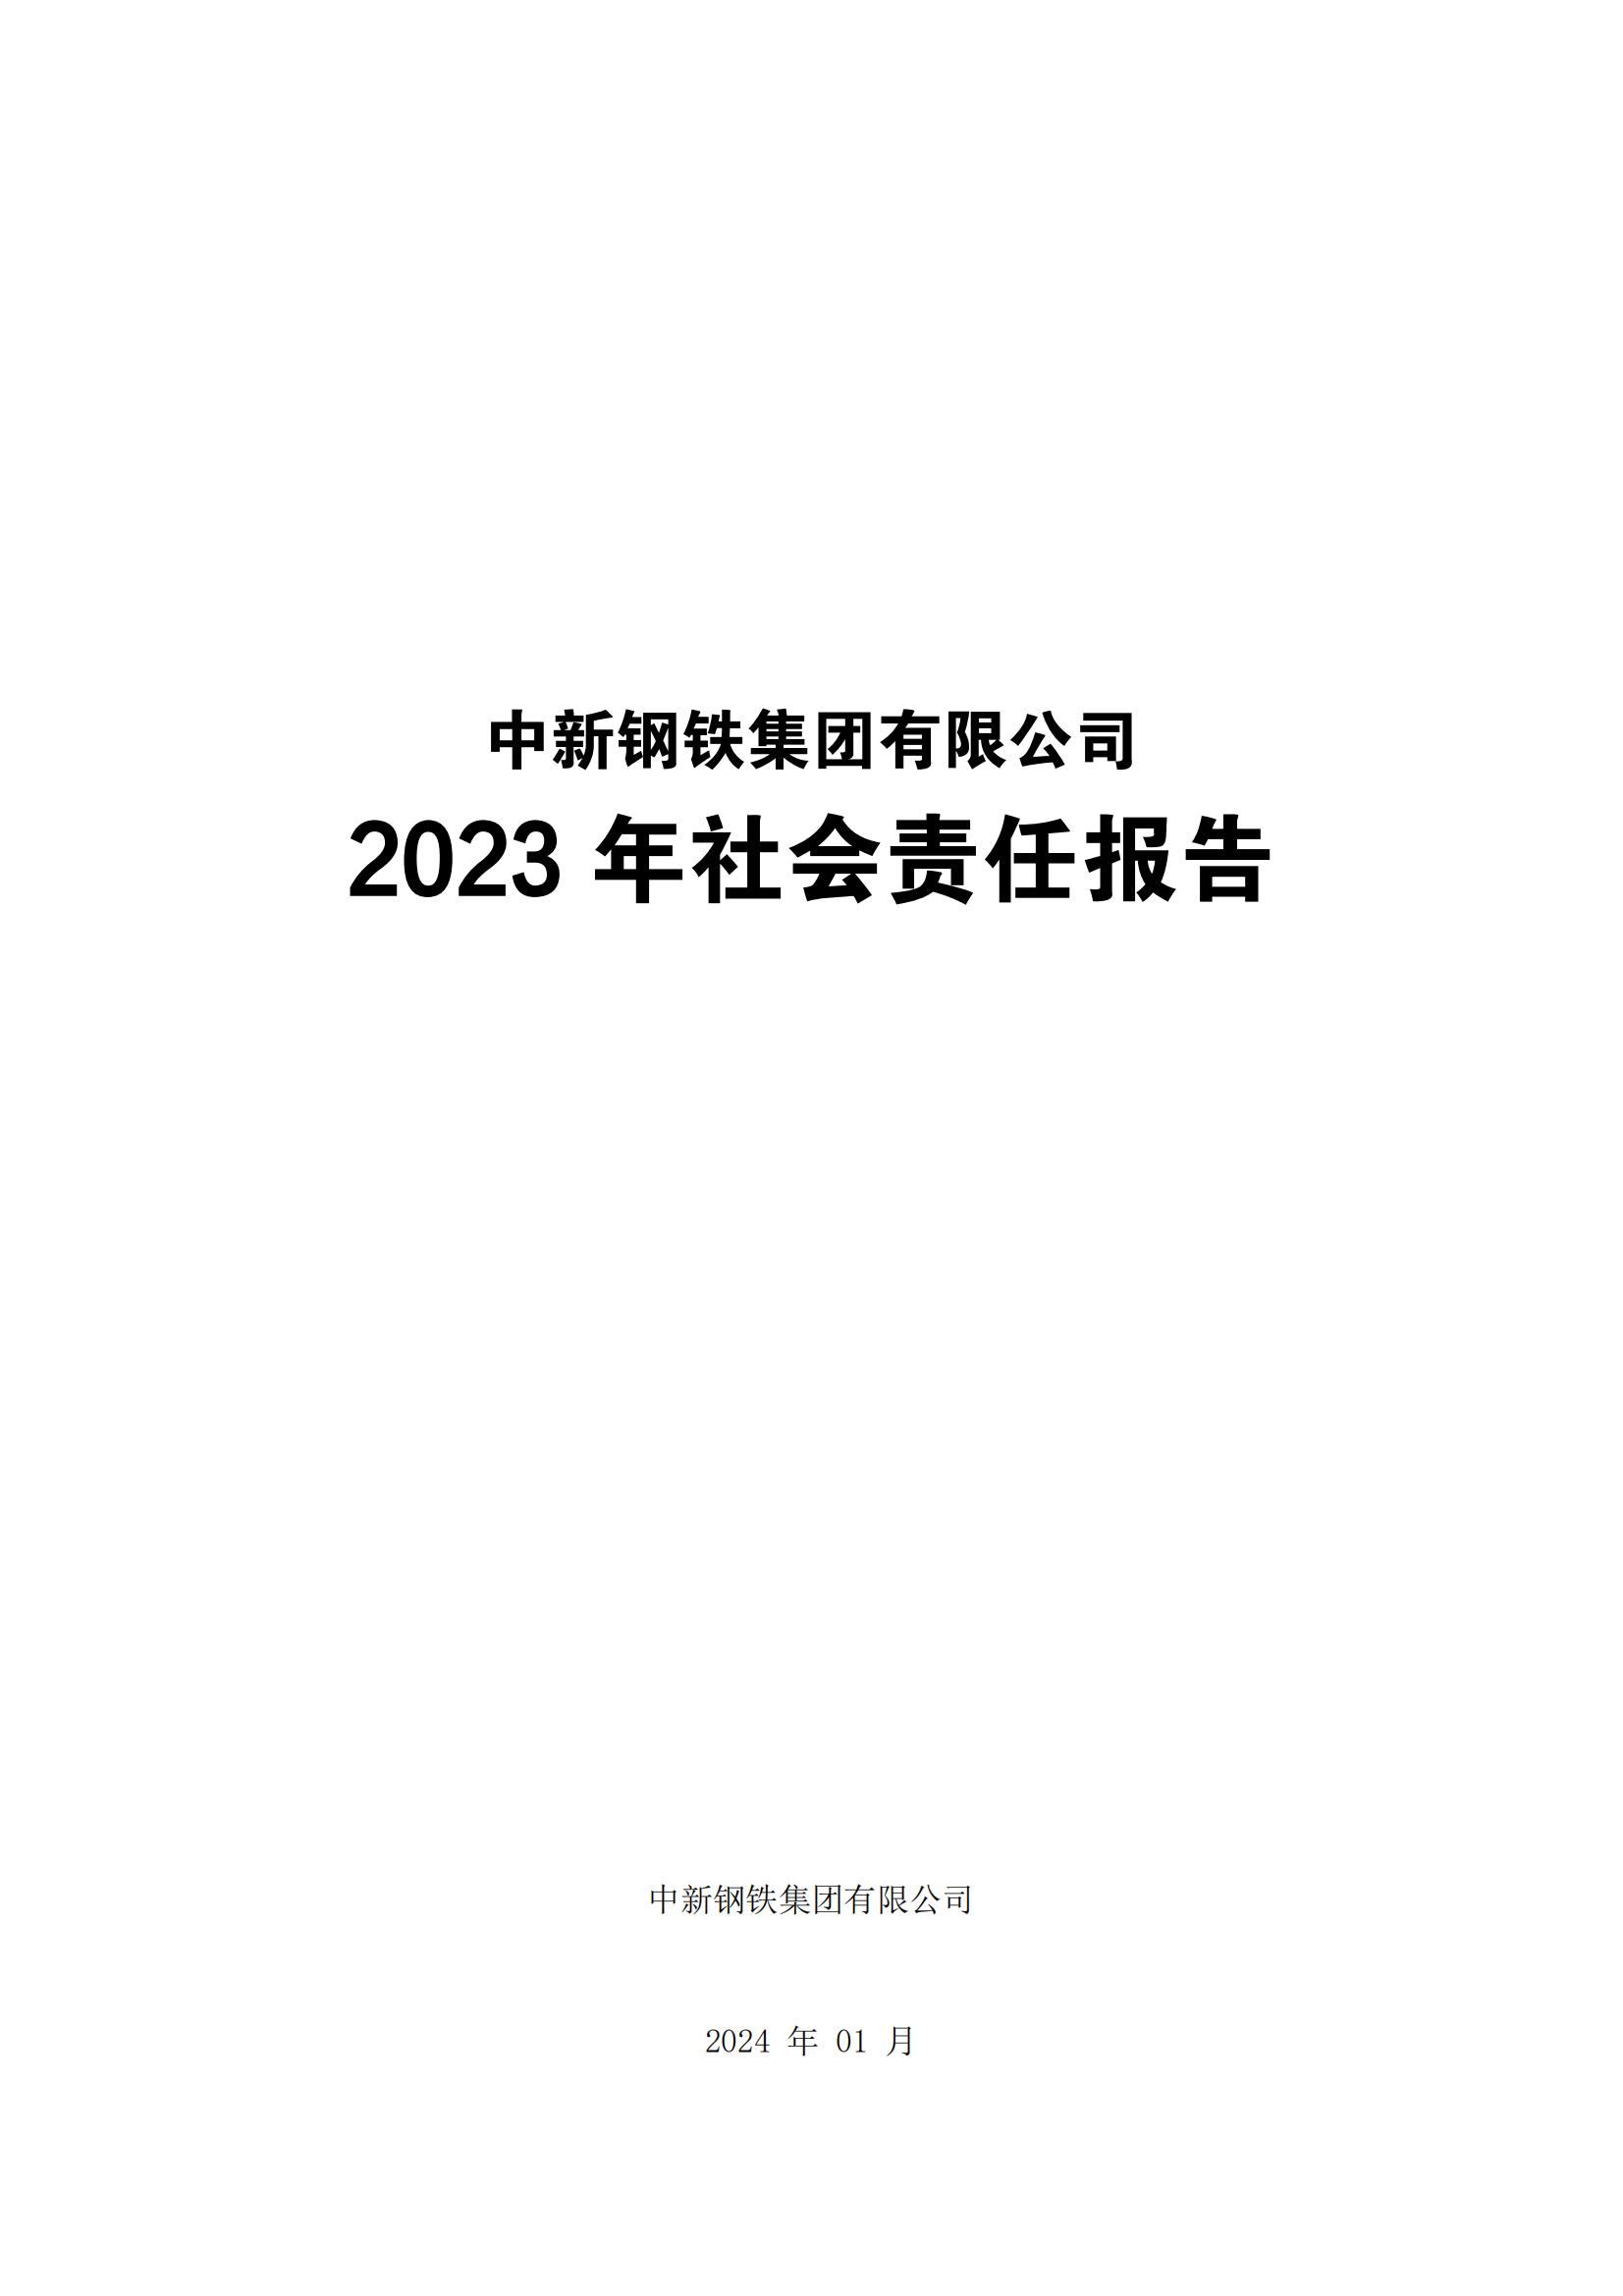 2024年度企业社会责任报告(1)_01